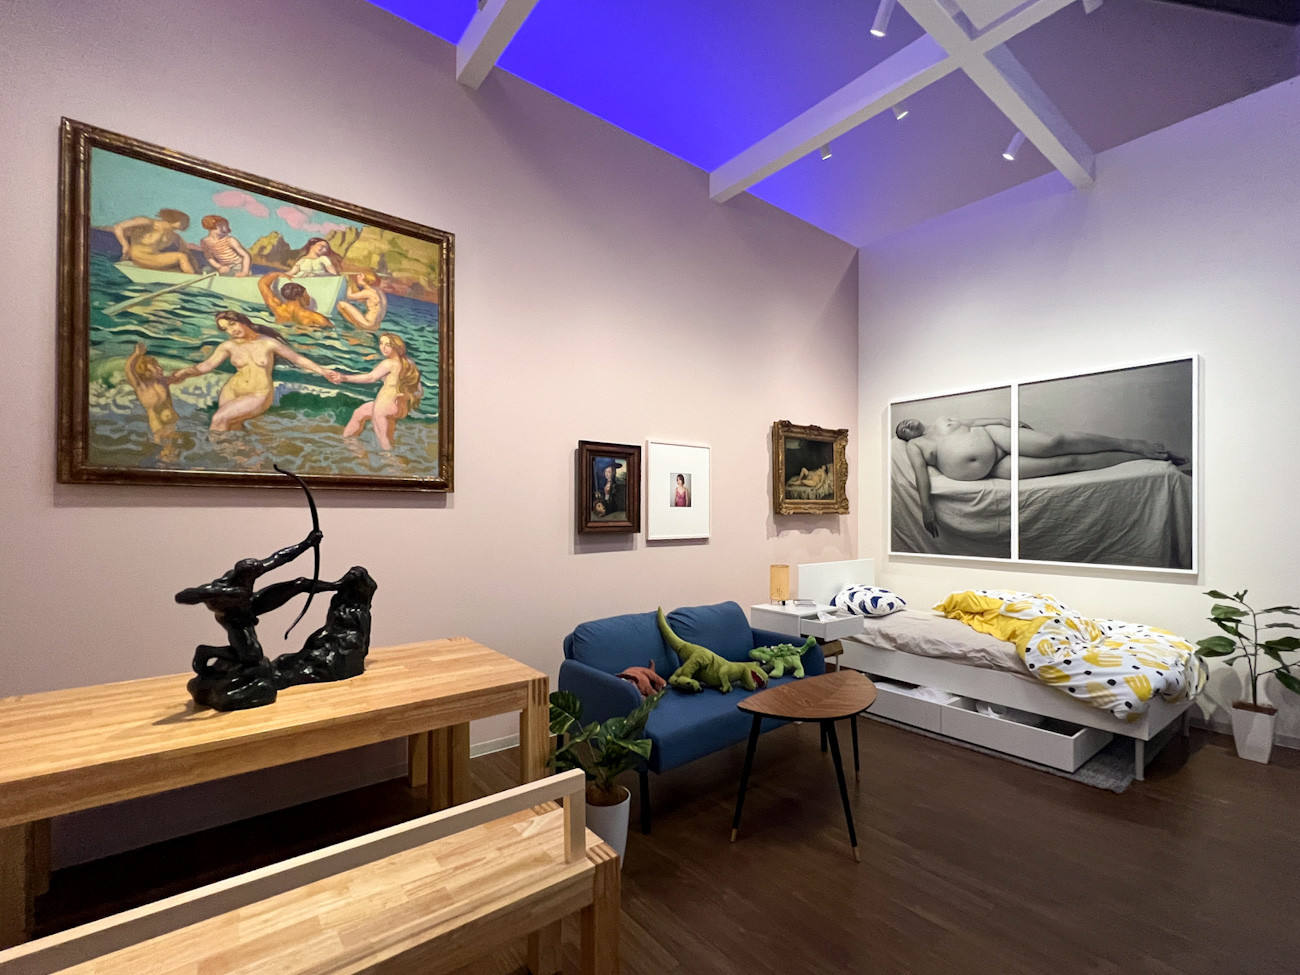  国立西洋美術館「ここは未来のアーティストたちが眠る部屋となりえてきたか？」会場